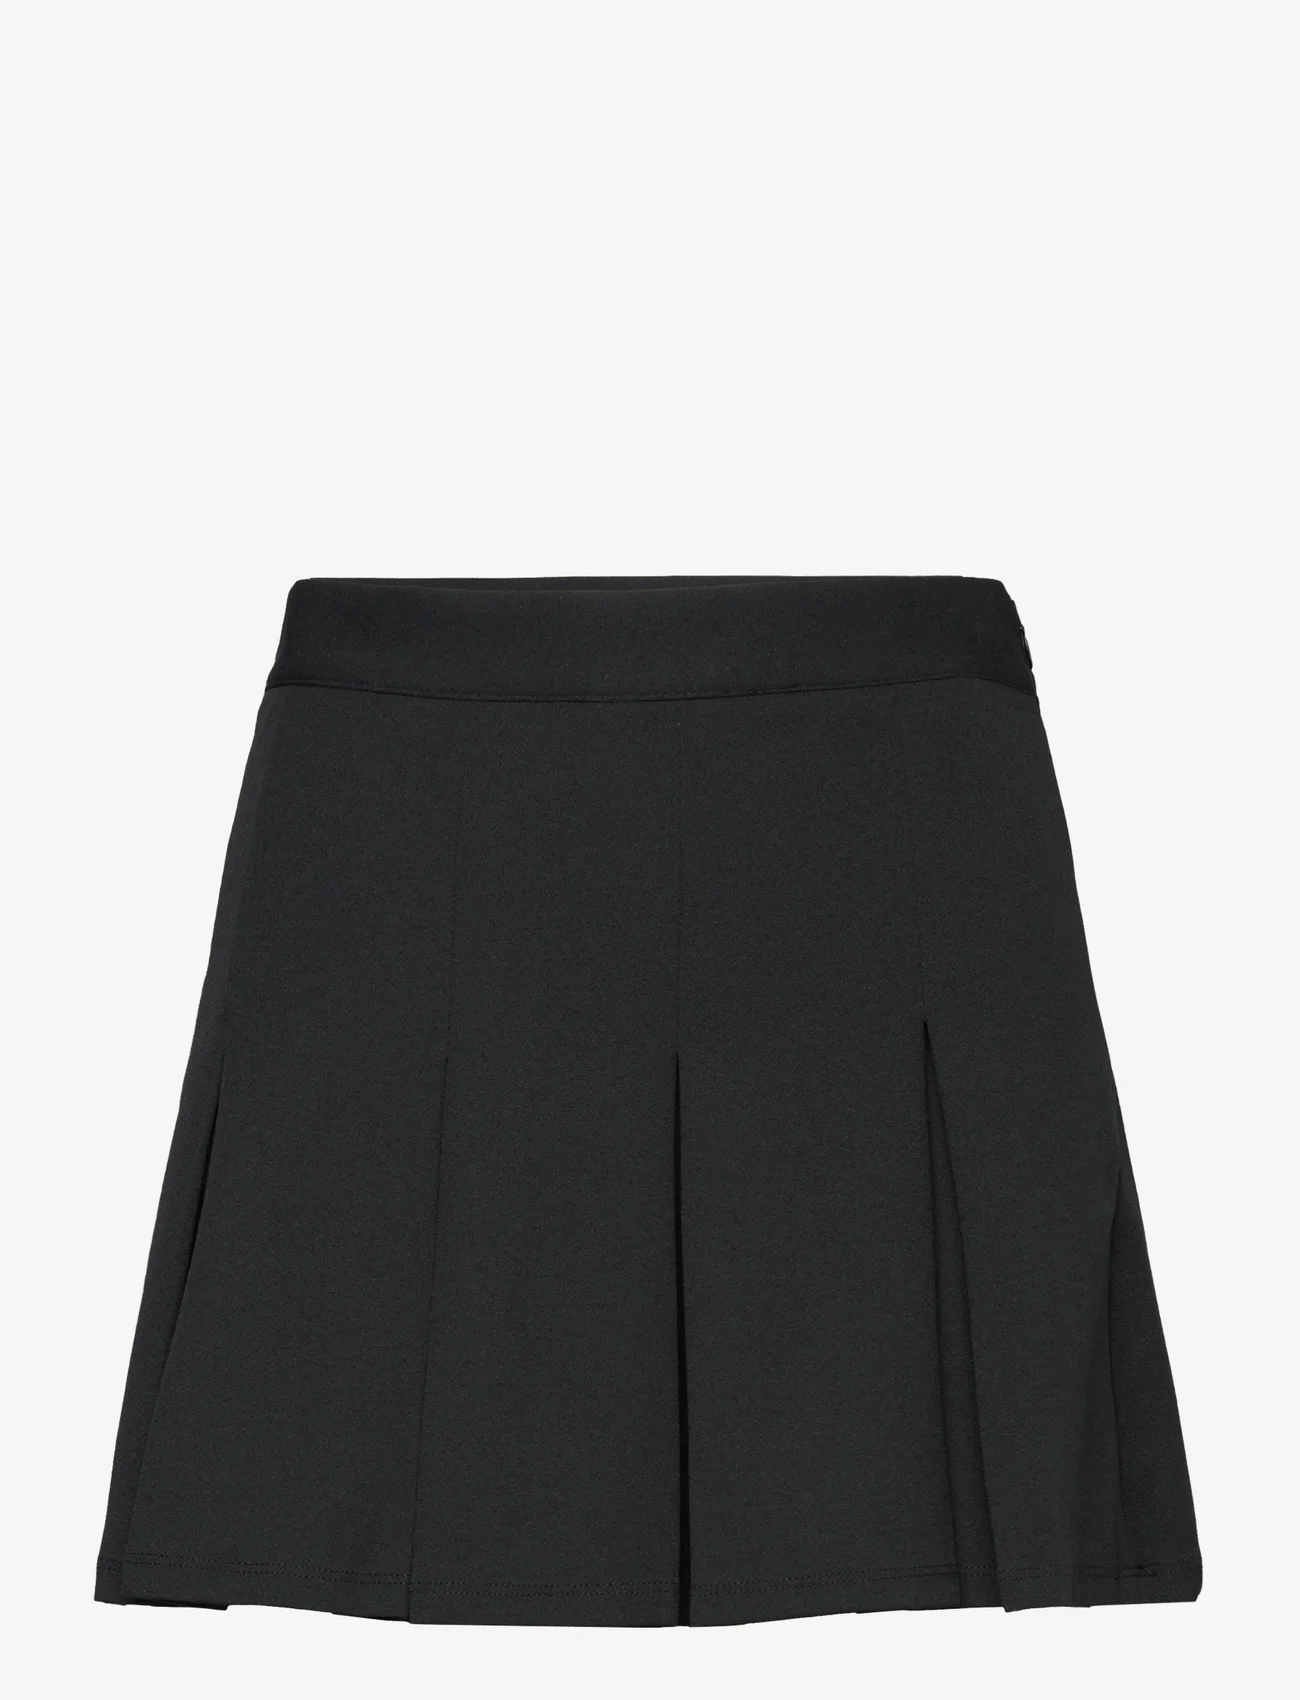 Mango - Wide pleated skirt - black - 0